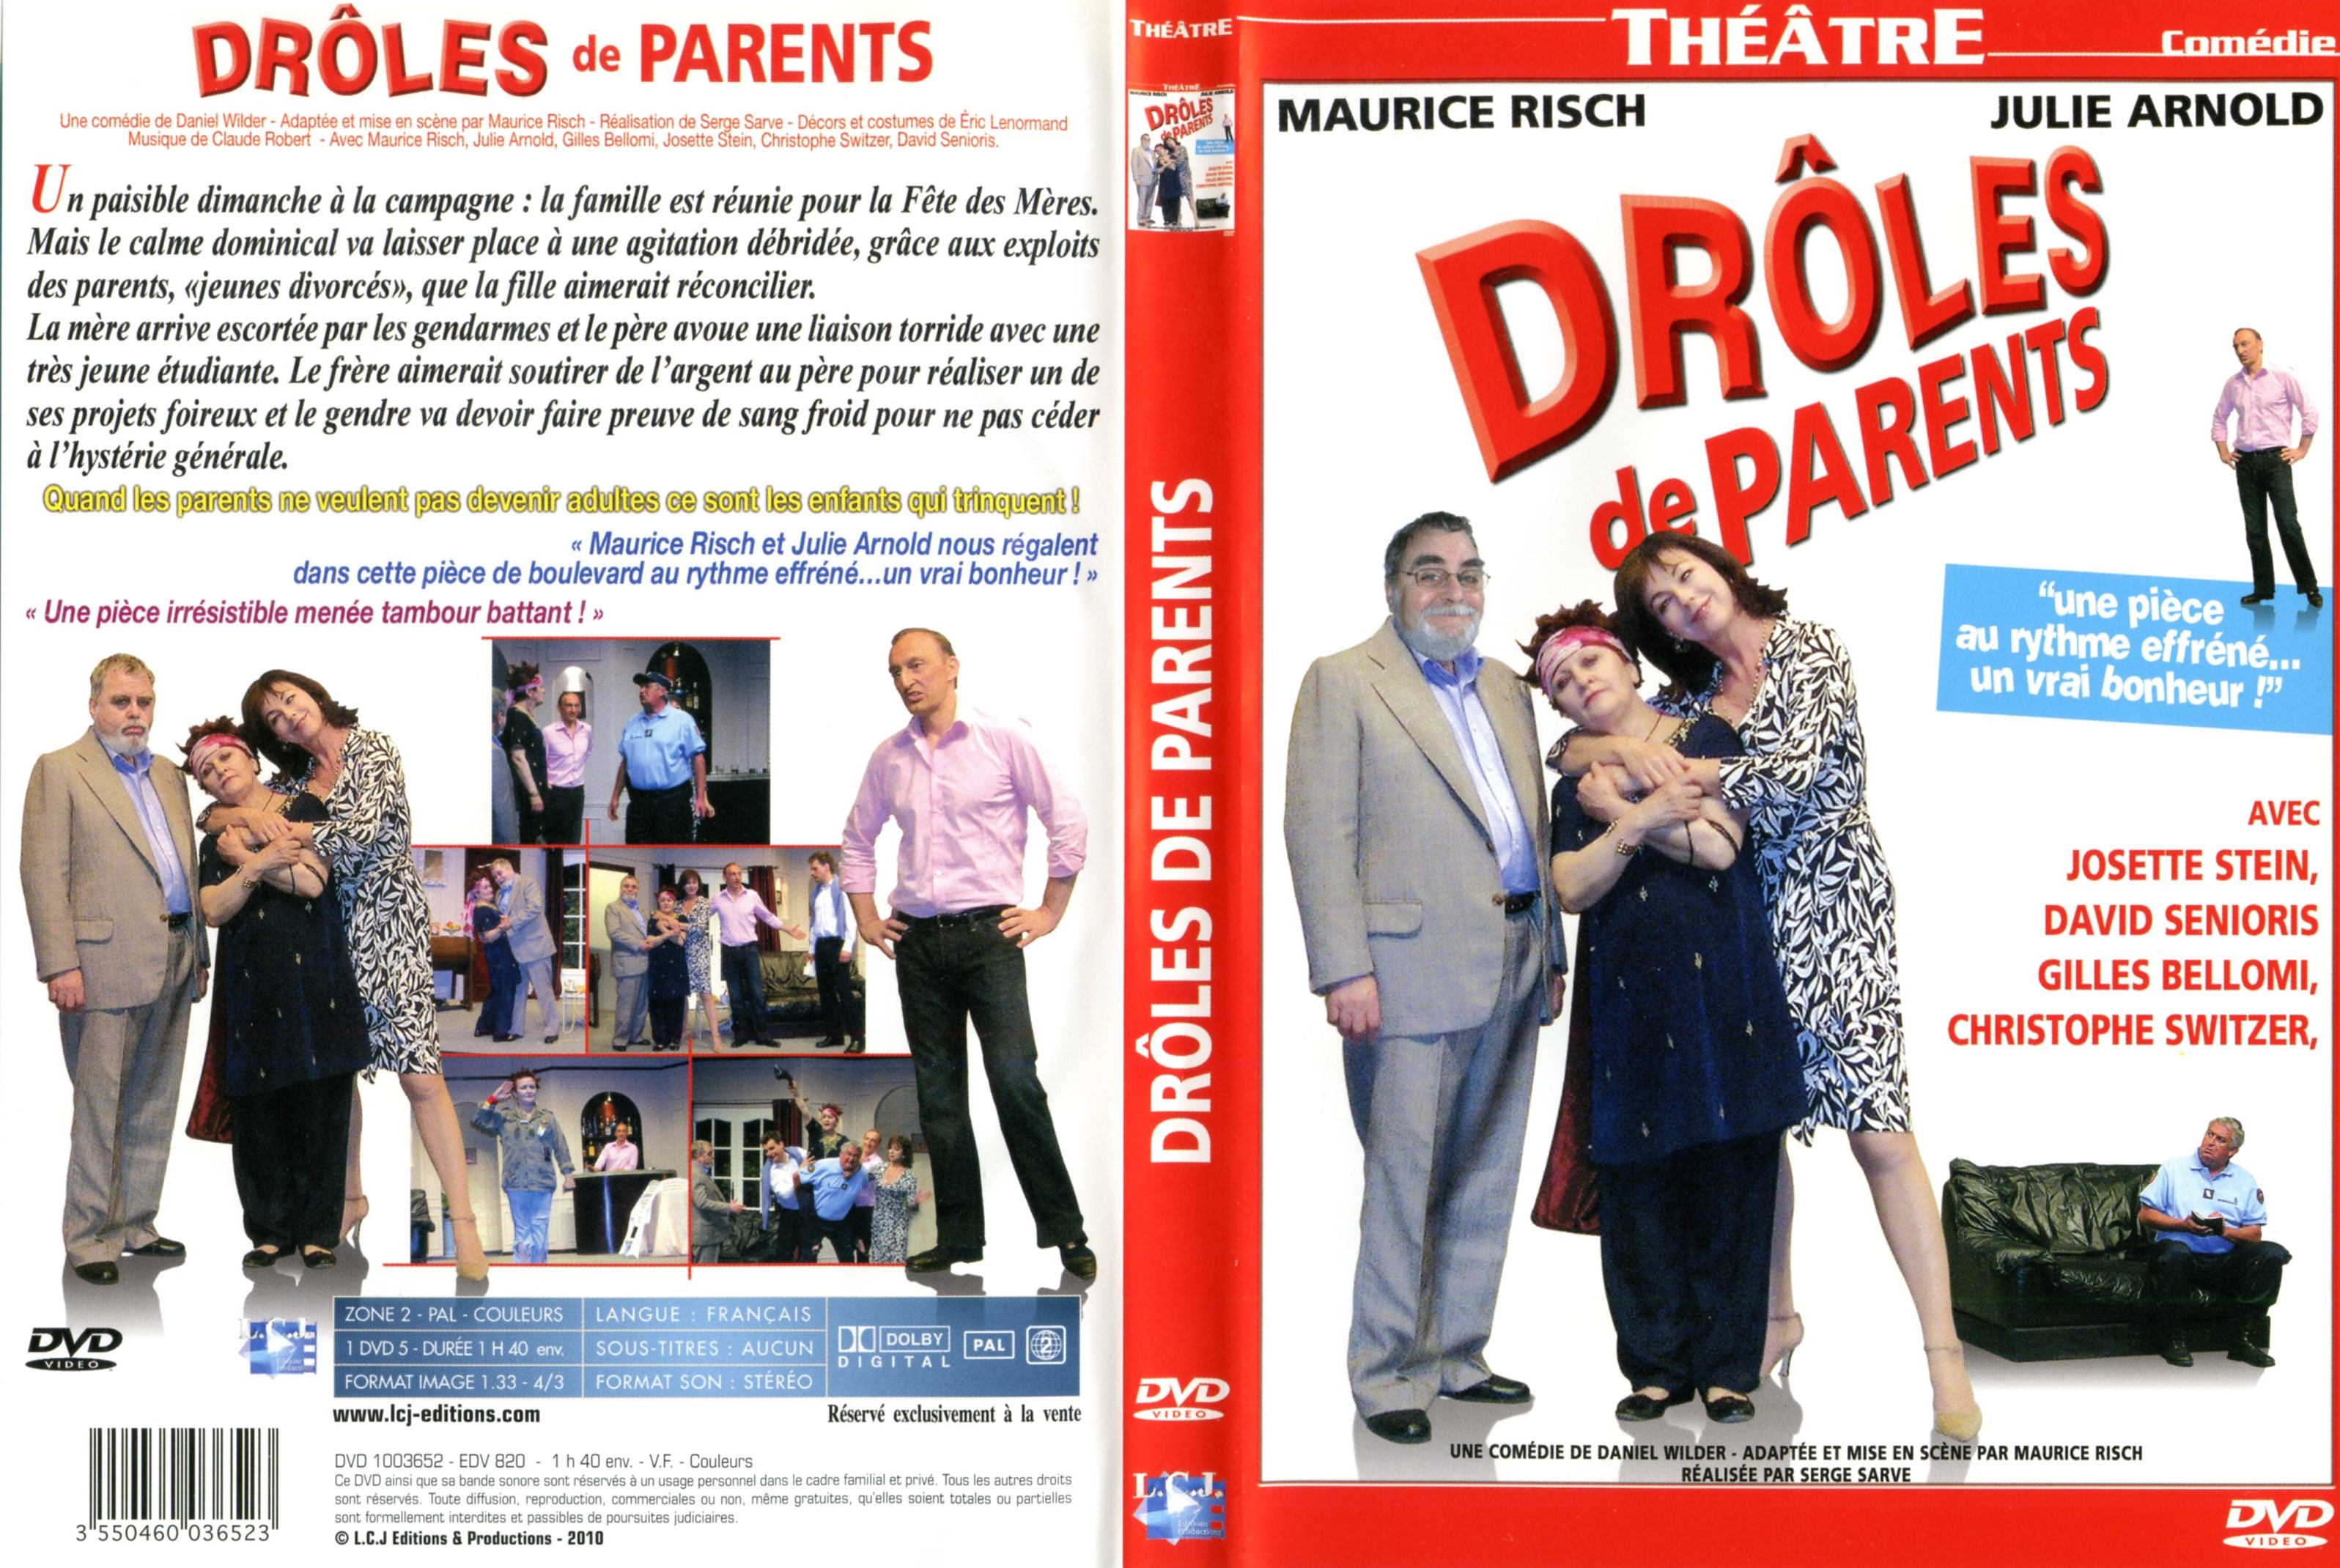 Jaquette DVD Droles de parents (thatre)